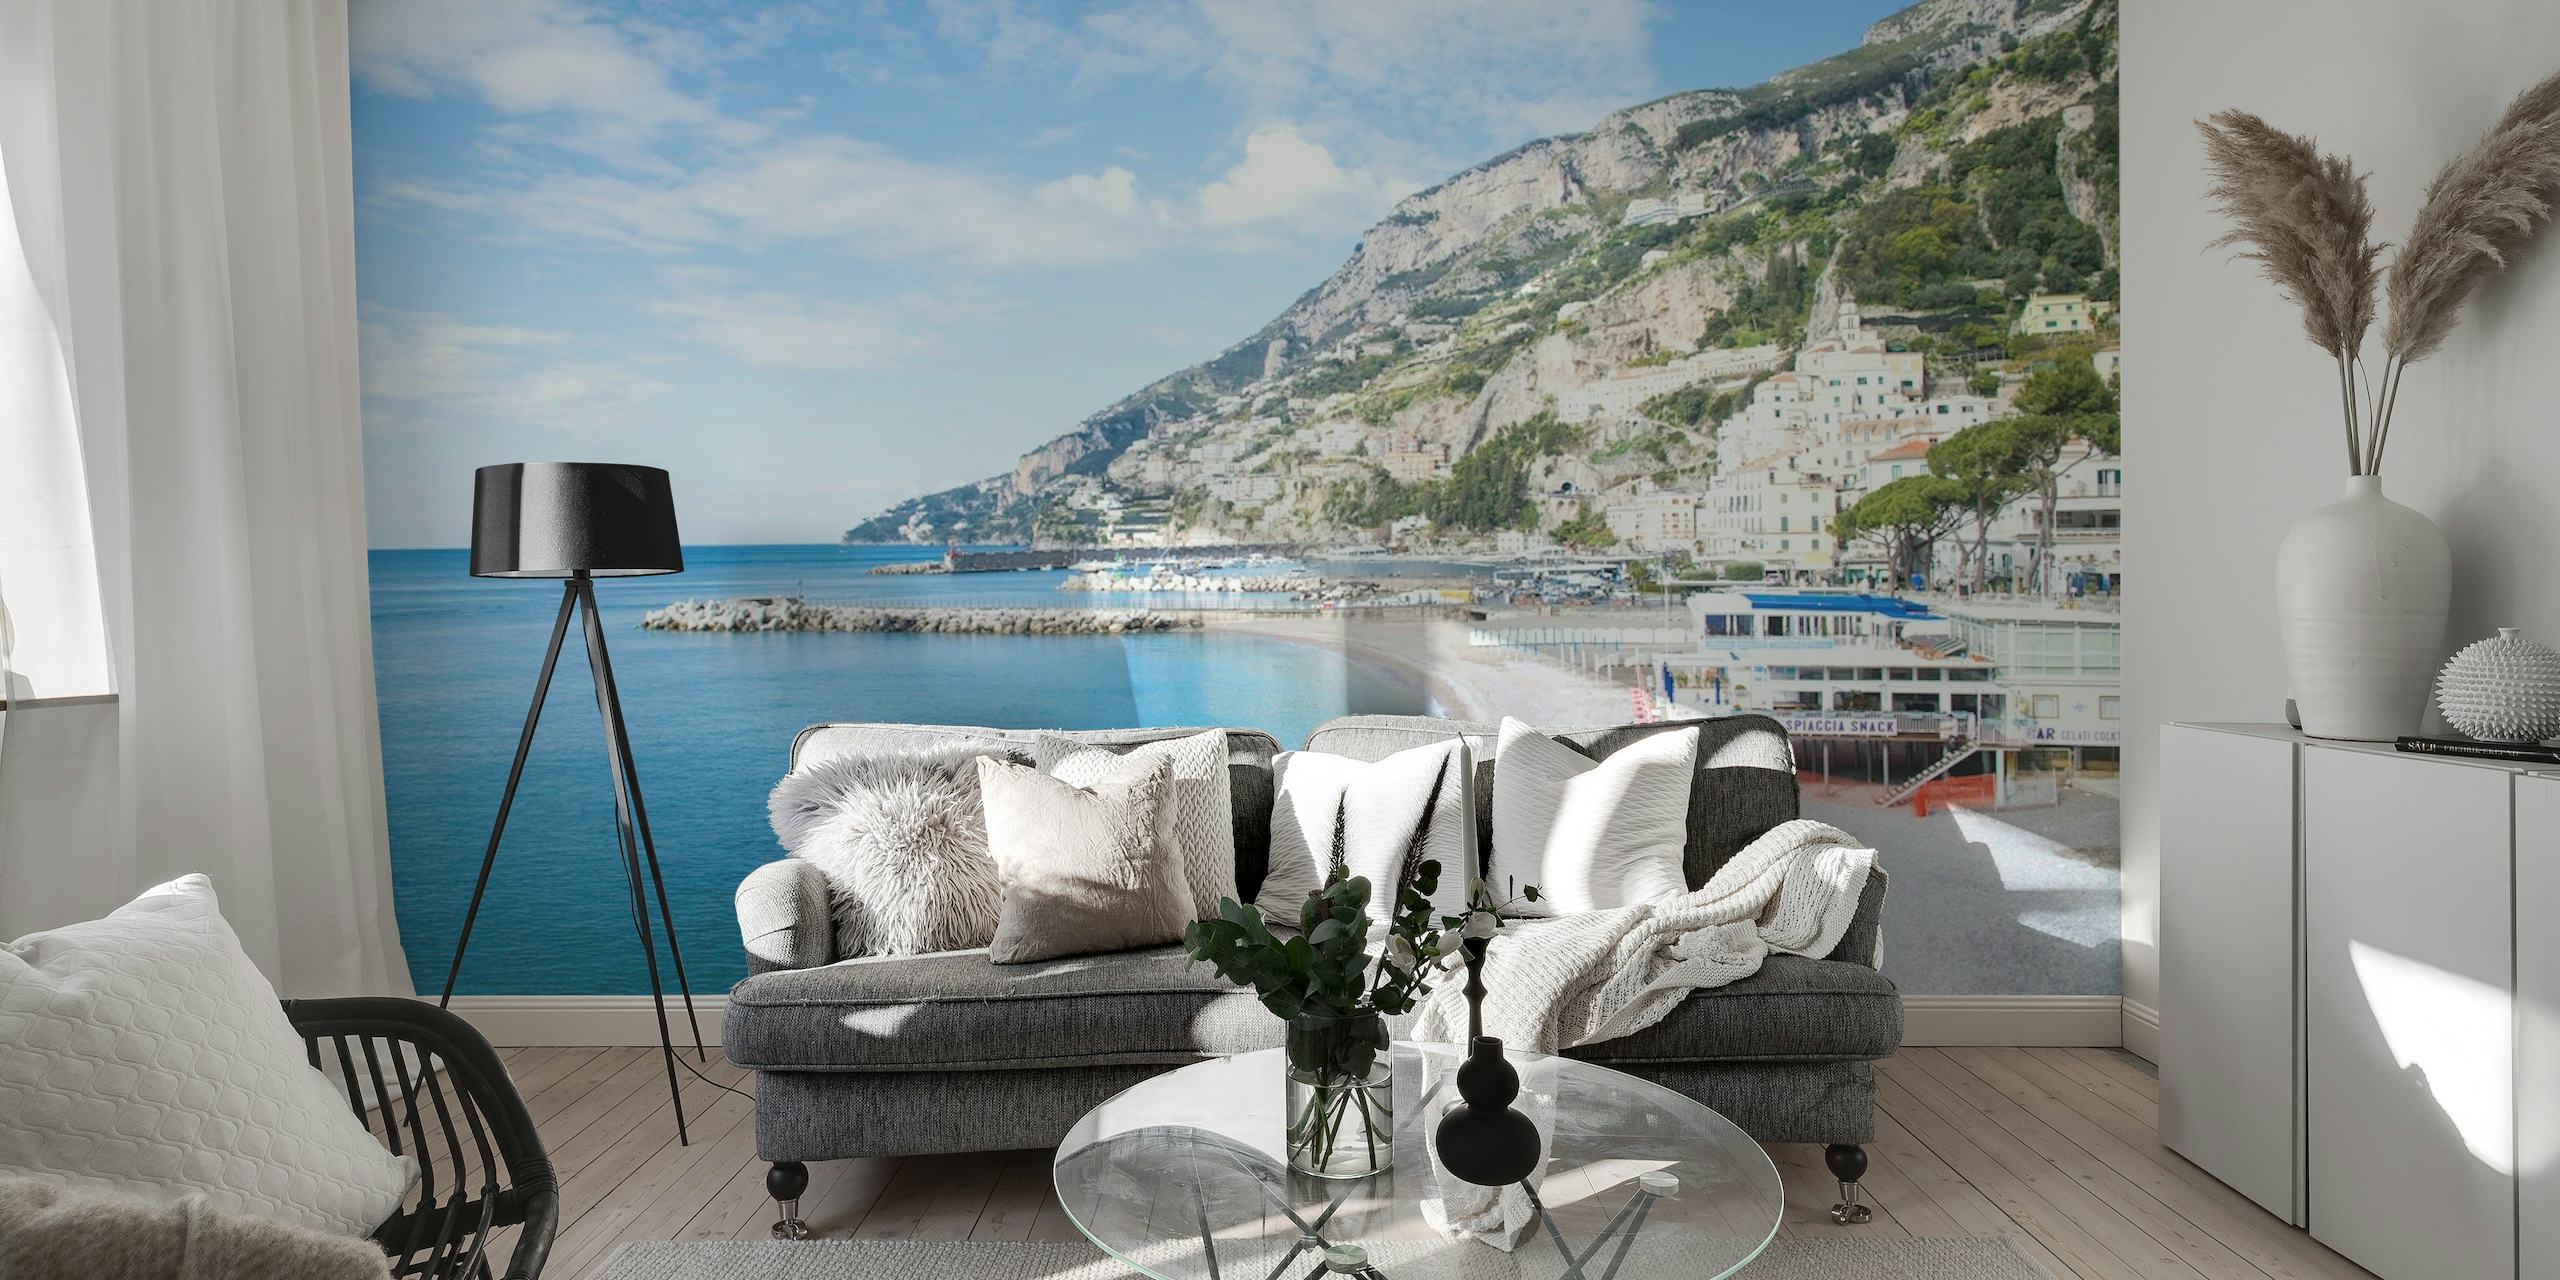 Fototapeta Bella Amalfi 1 zobrazující pobřeží Amalfi s průzračně modrým mořem a budovami na útesech